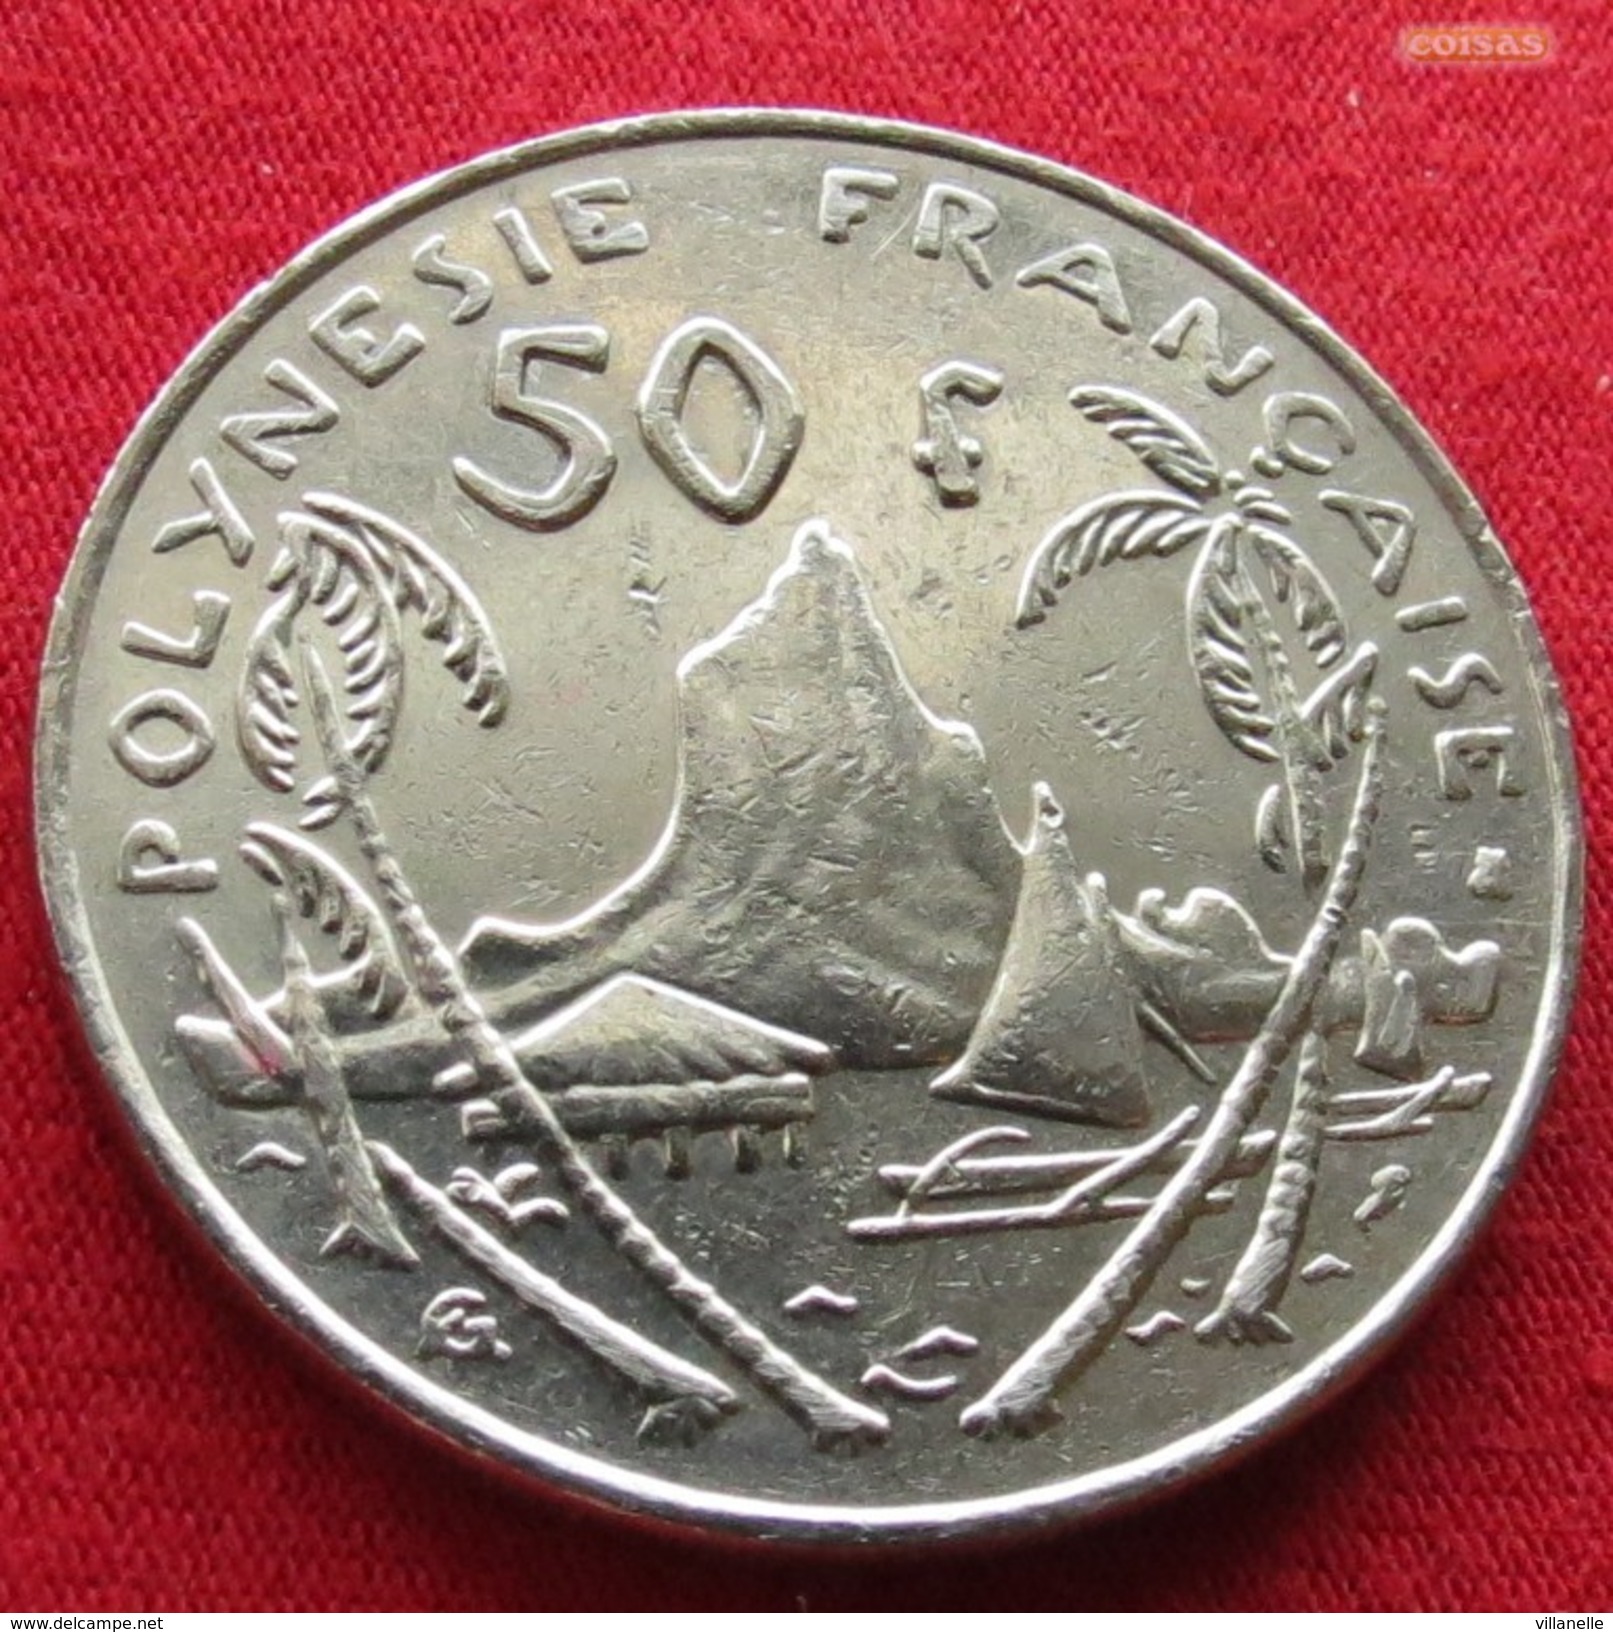 French Polynesia 50 Francs 1995 KM# 13 Polynesie Polinesia - Polynésie Française